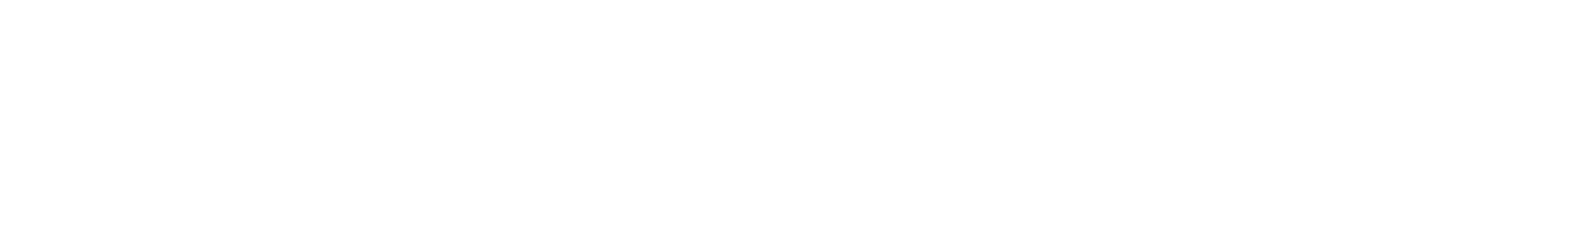 Garmin logo grand pour les fonds sombres (PNG transparent)